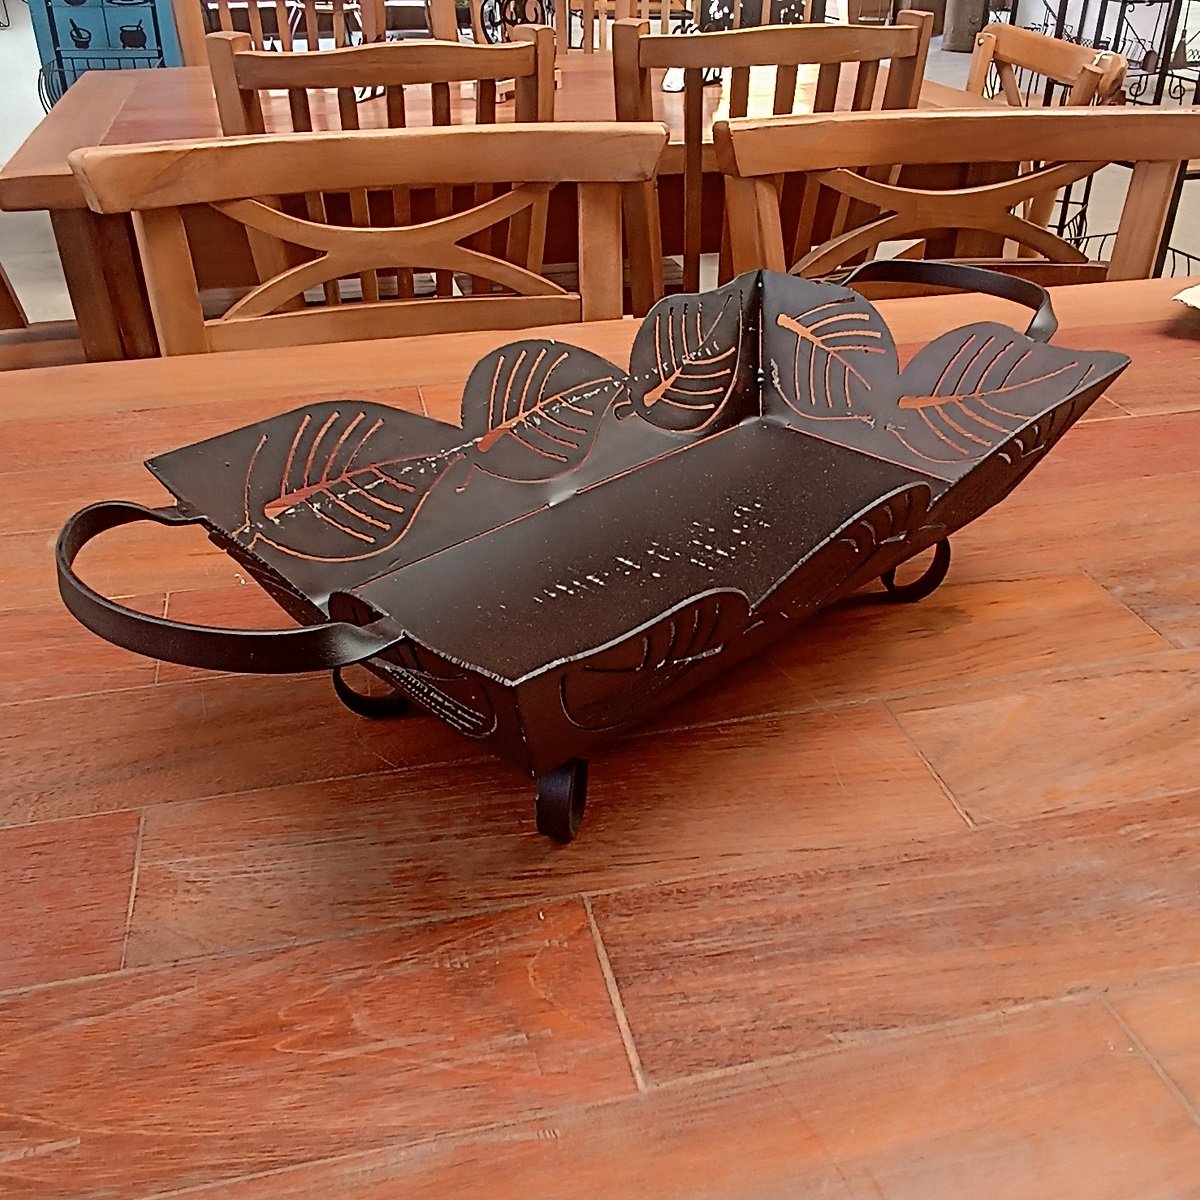 Bandeja de ferro para mesas e bancadas super resistente artesanato rústico para decoração e utilidad - 2